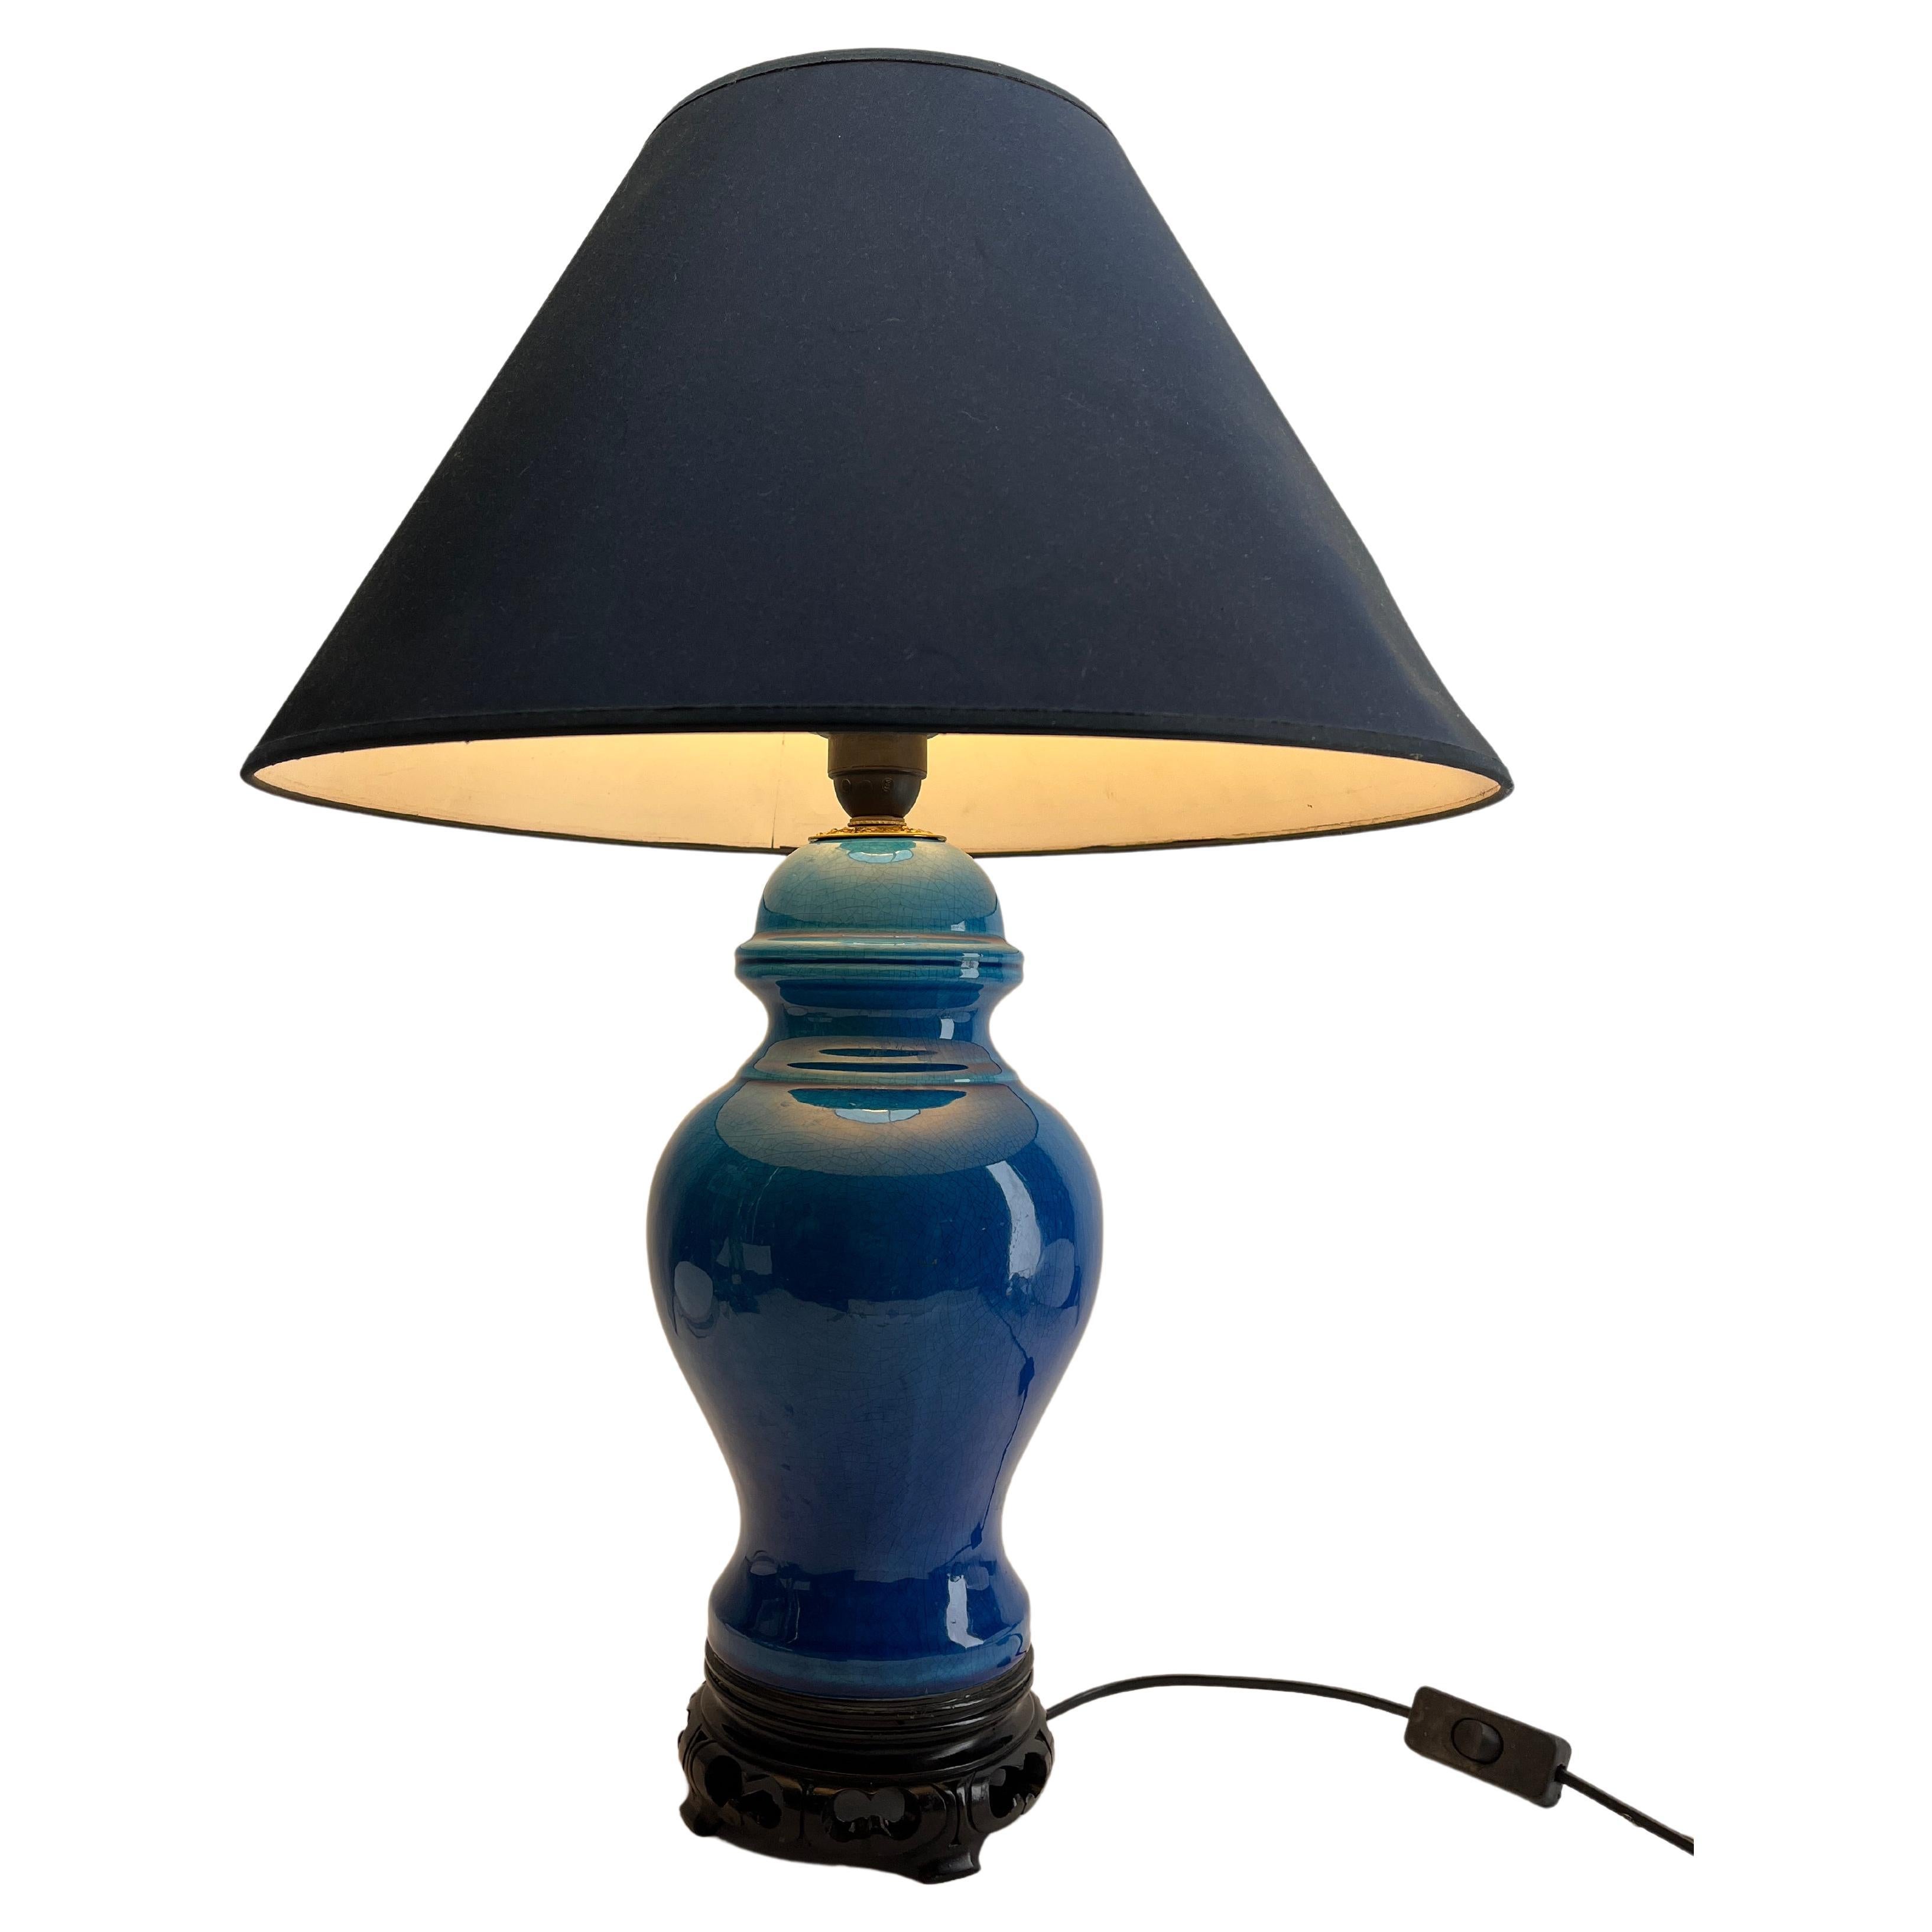 Inspirée d'une technique séculaire de la céramique chinoise, cette élégante lampe de table présente une teinte turquoise brillante et spectaculaire avec un fin glaçage craquelé. 
Les dimensions sont mesurées sans abat-jour.

Renouvelé et recâblé